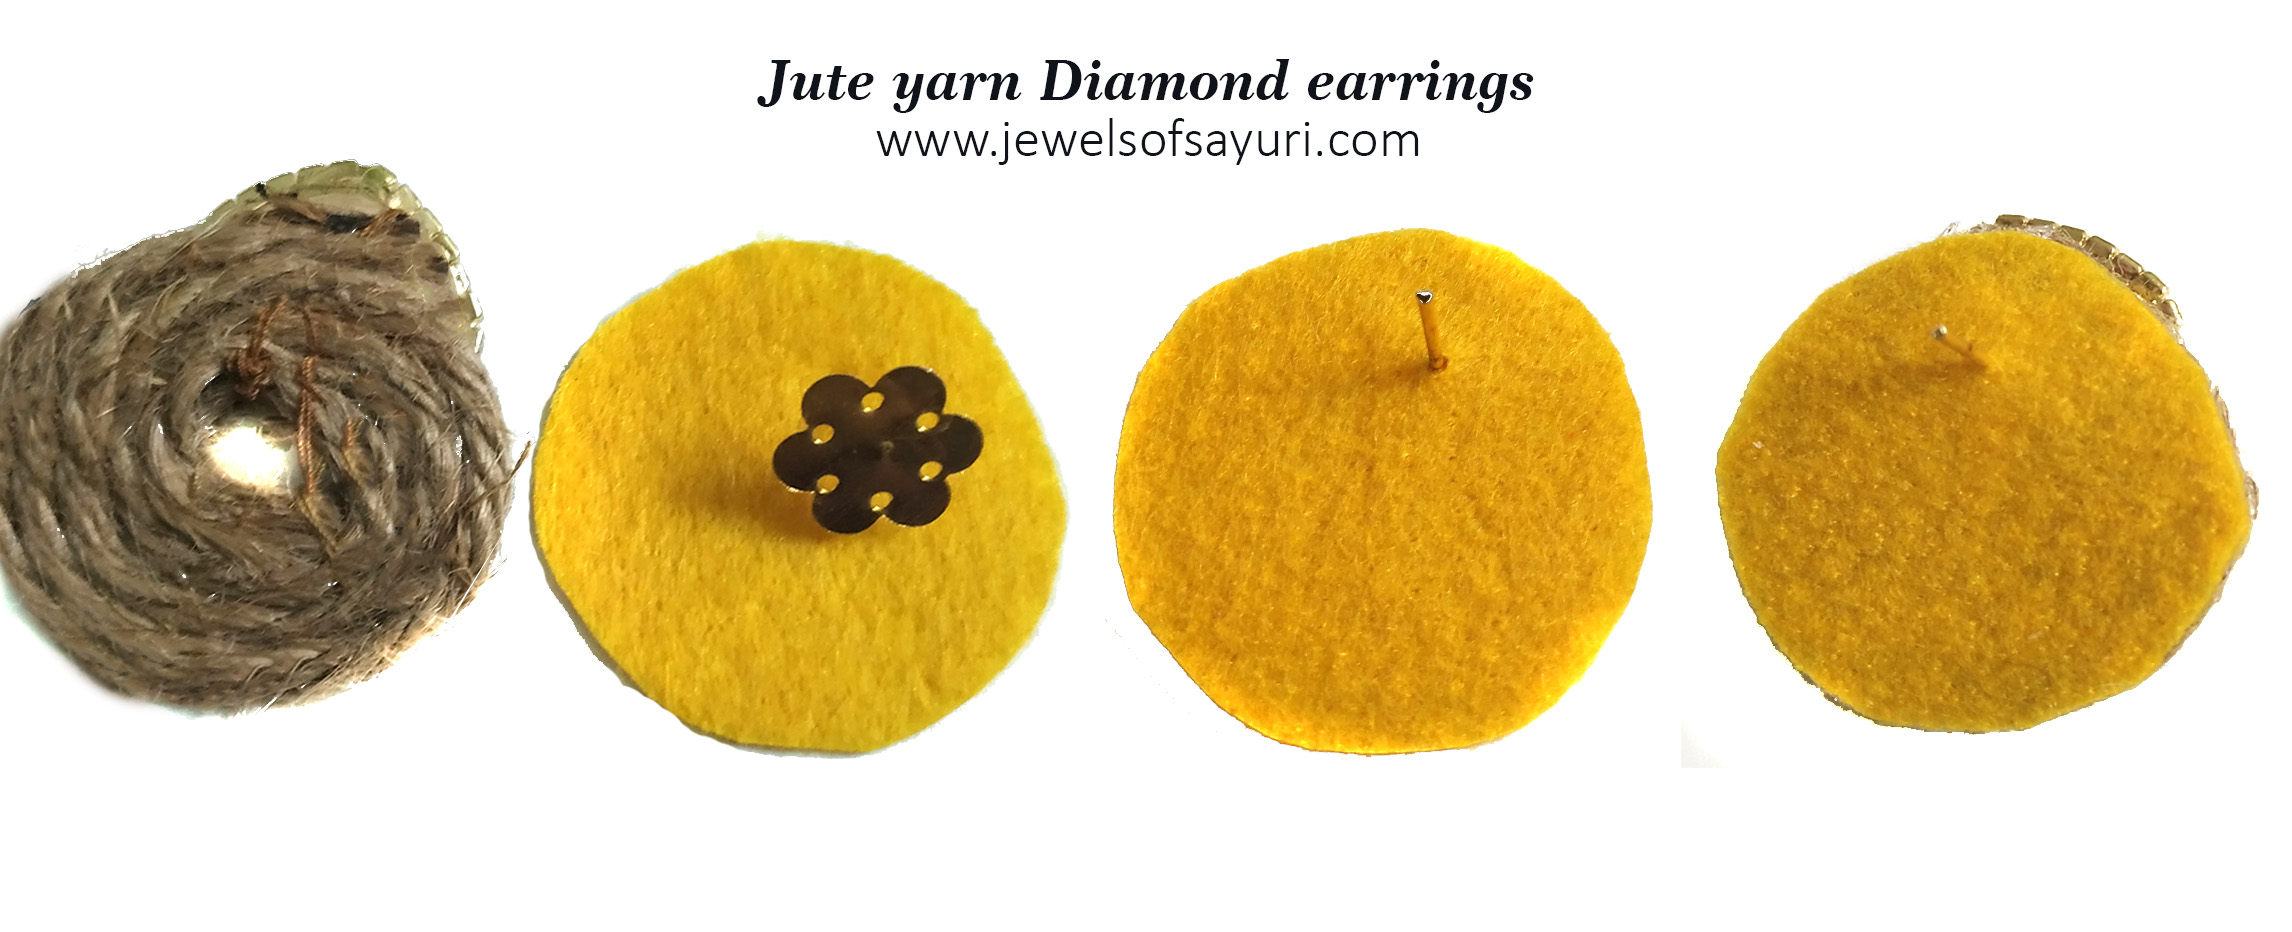 ute yarn diamond earrings tutorial 2